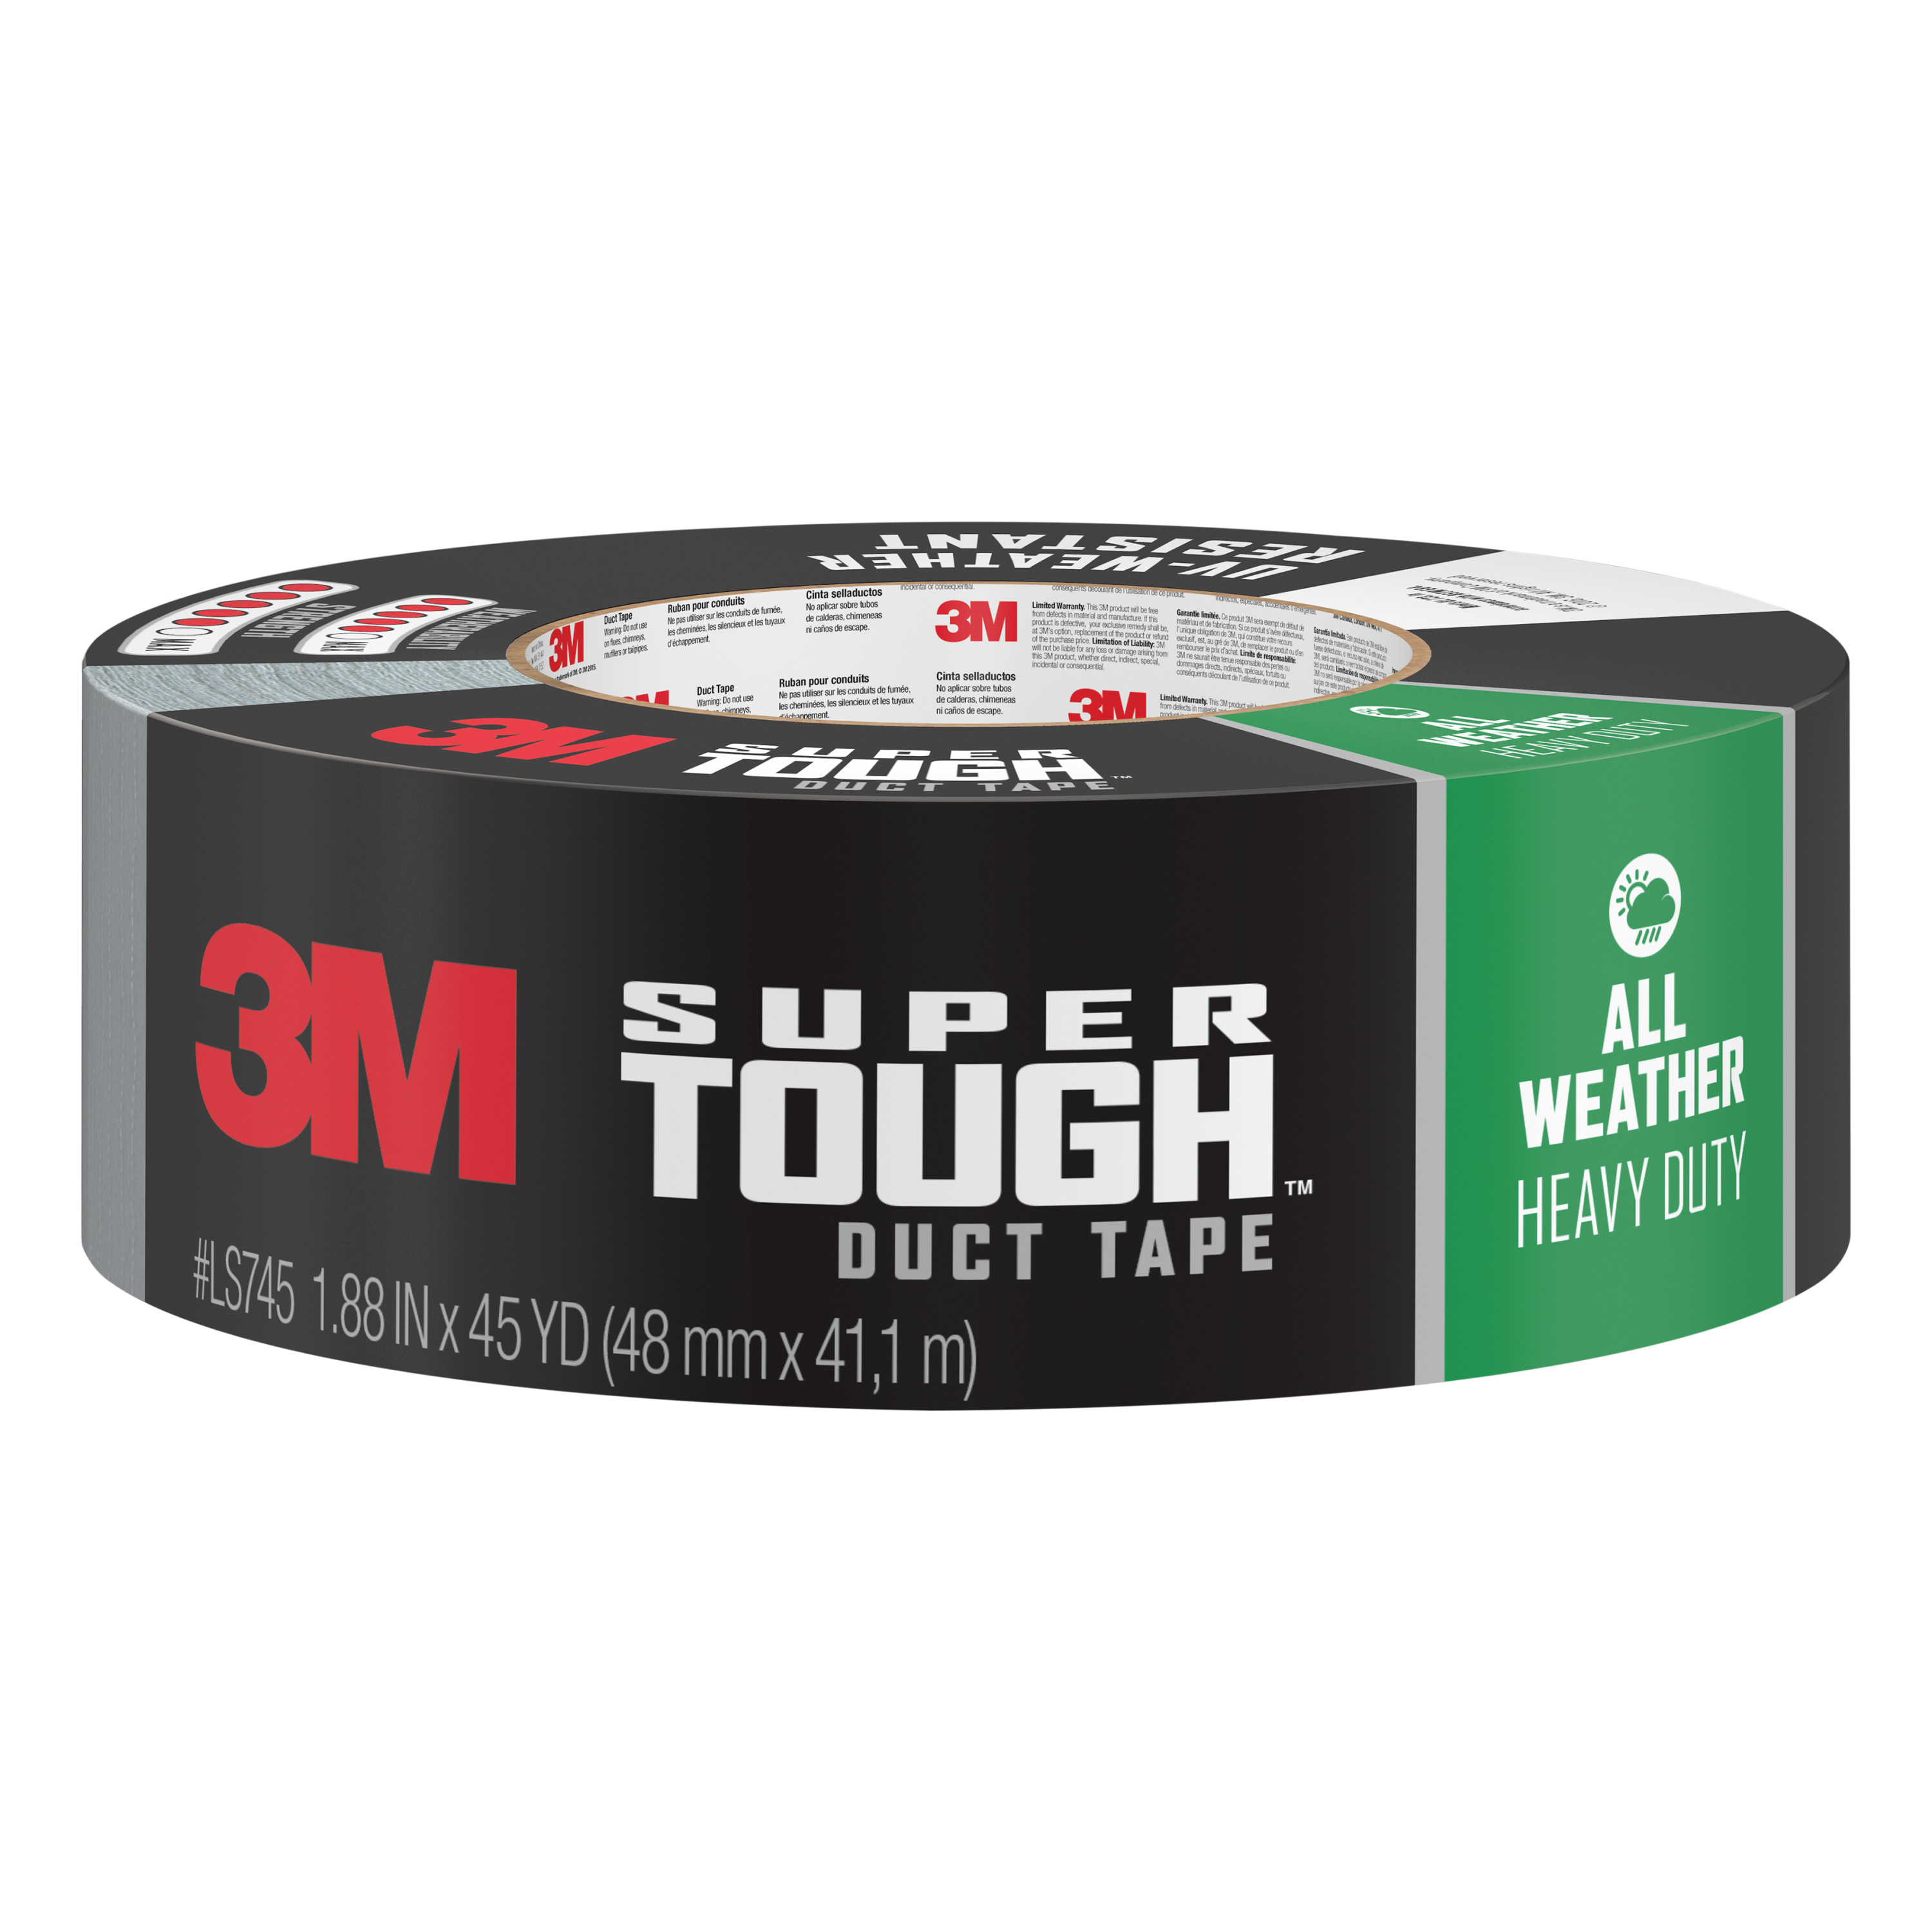 3M™ Super Tough Duct Tape 2545-SV, 1.88 in x 45 yd (48 mm x 41.1 m)